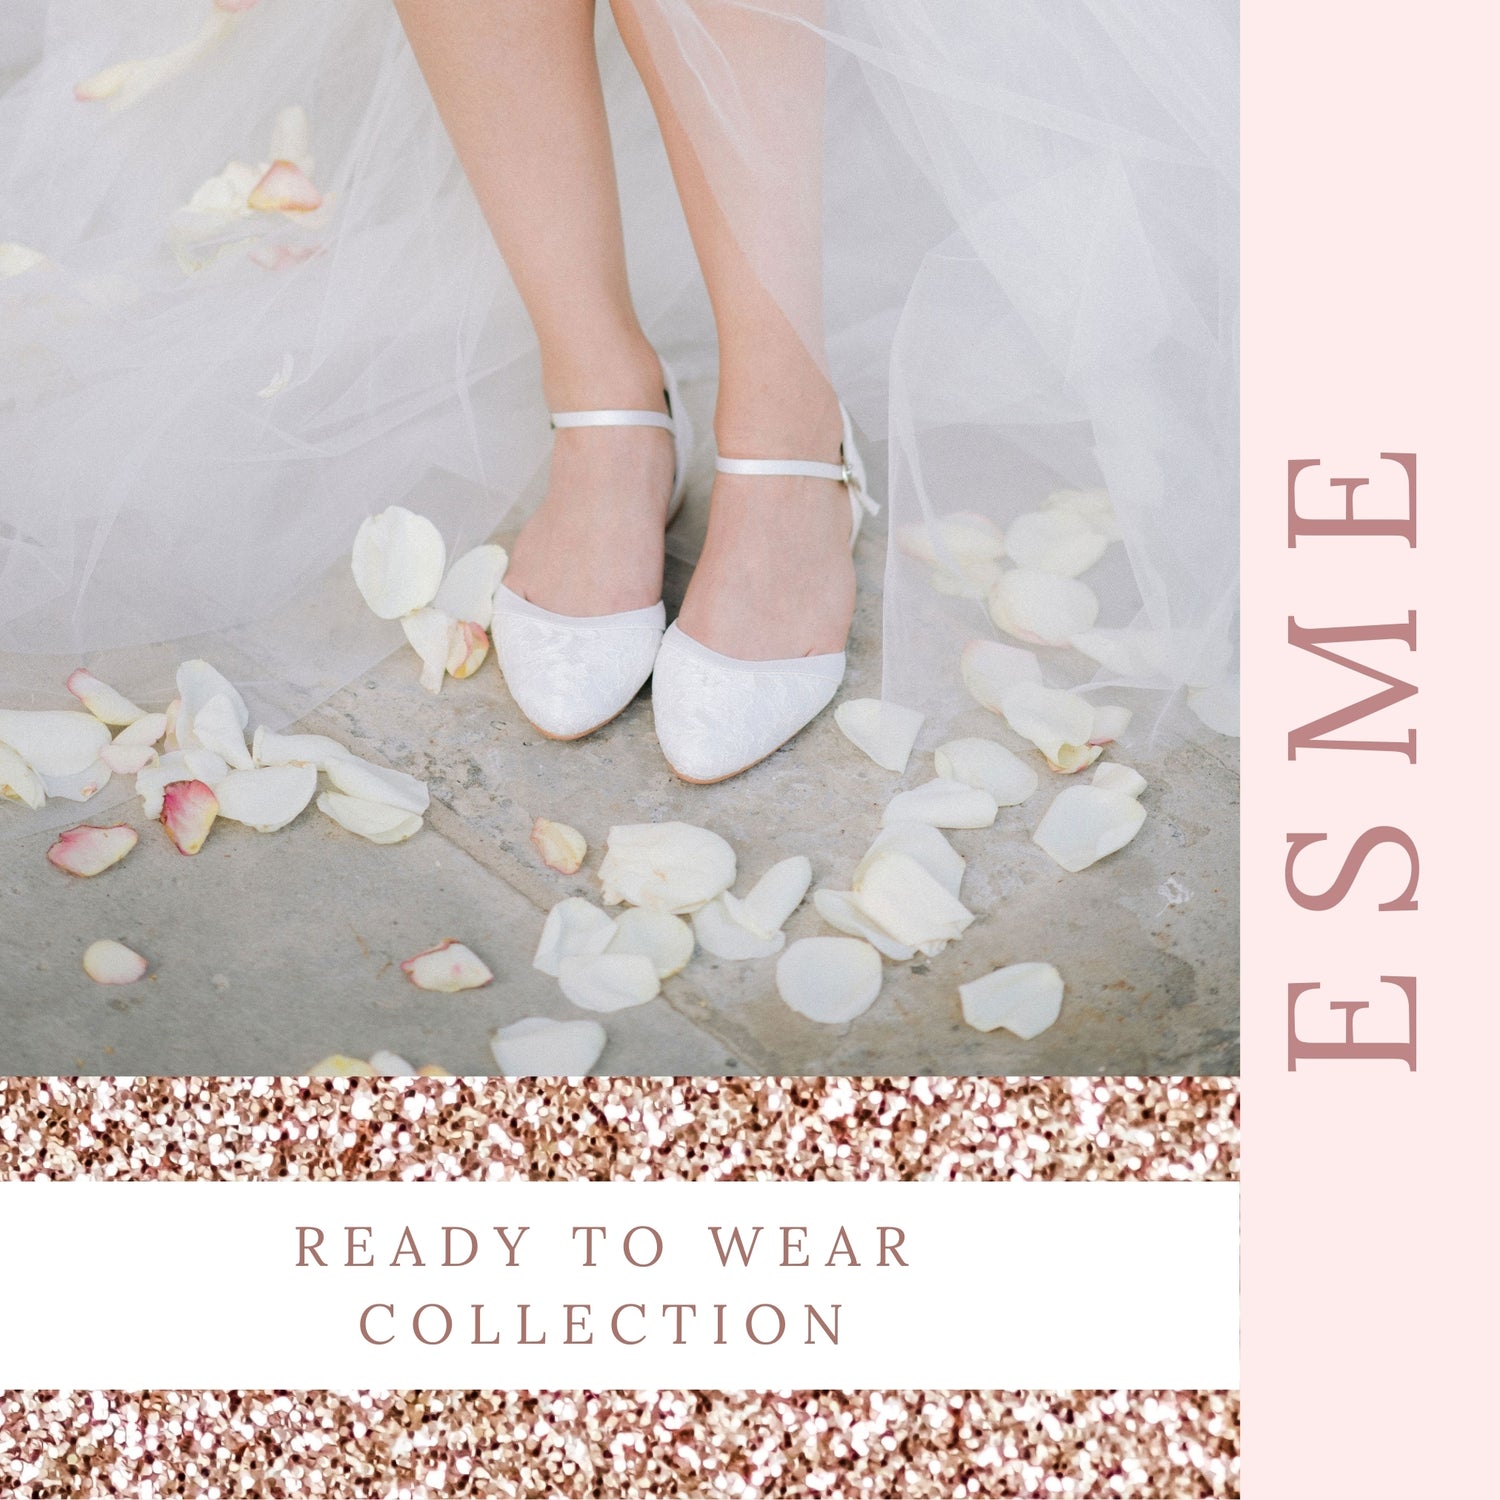 wedding-shoes-low-heel-block-heels